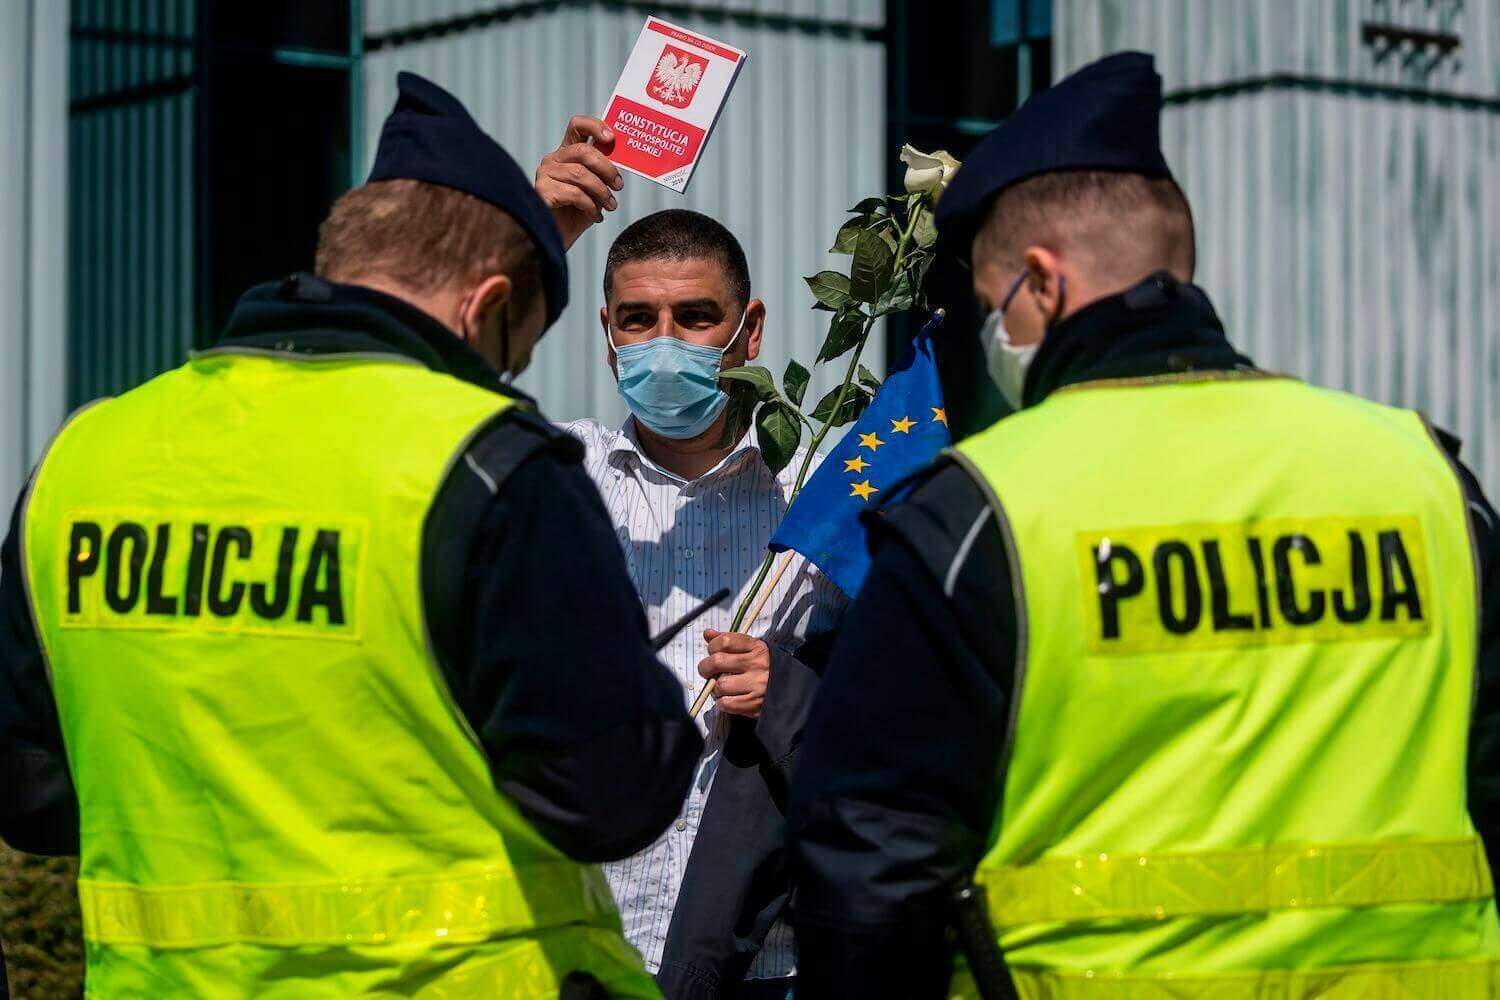 Um homem possui uma cópia da Constituição polonesa enquanto policiais checam sua carteira de identidade depois de participar de um protesto em Varsóvia, na Polônia, em 30 de abril. WOJTEK RADWANSKI / AFP via Getty Images